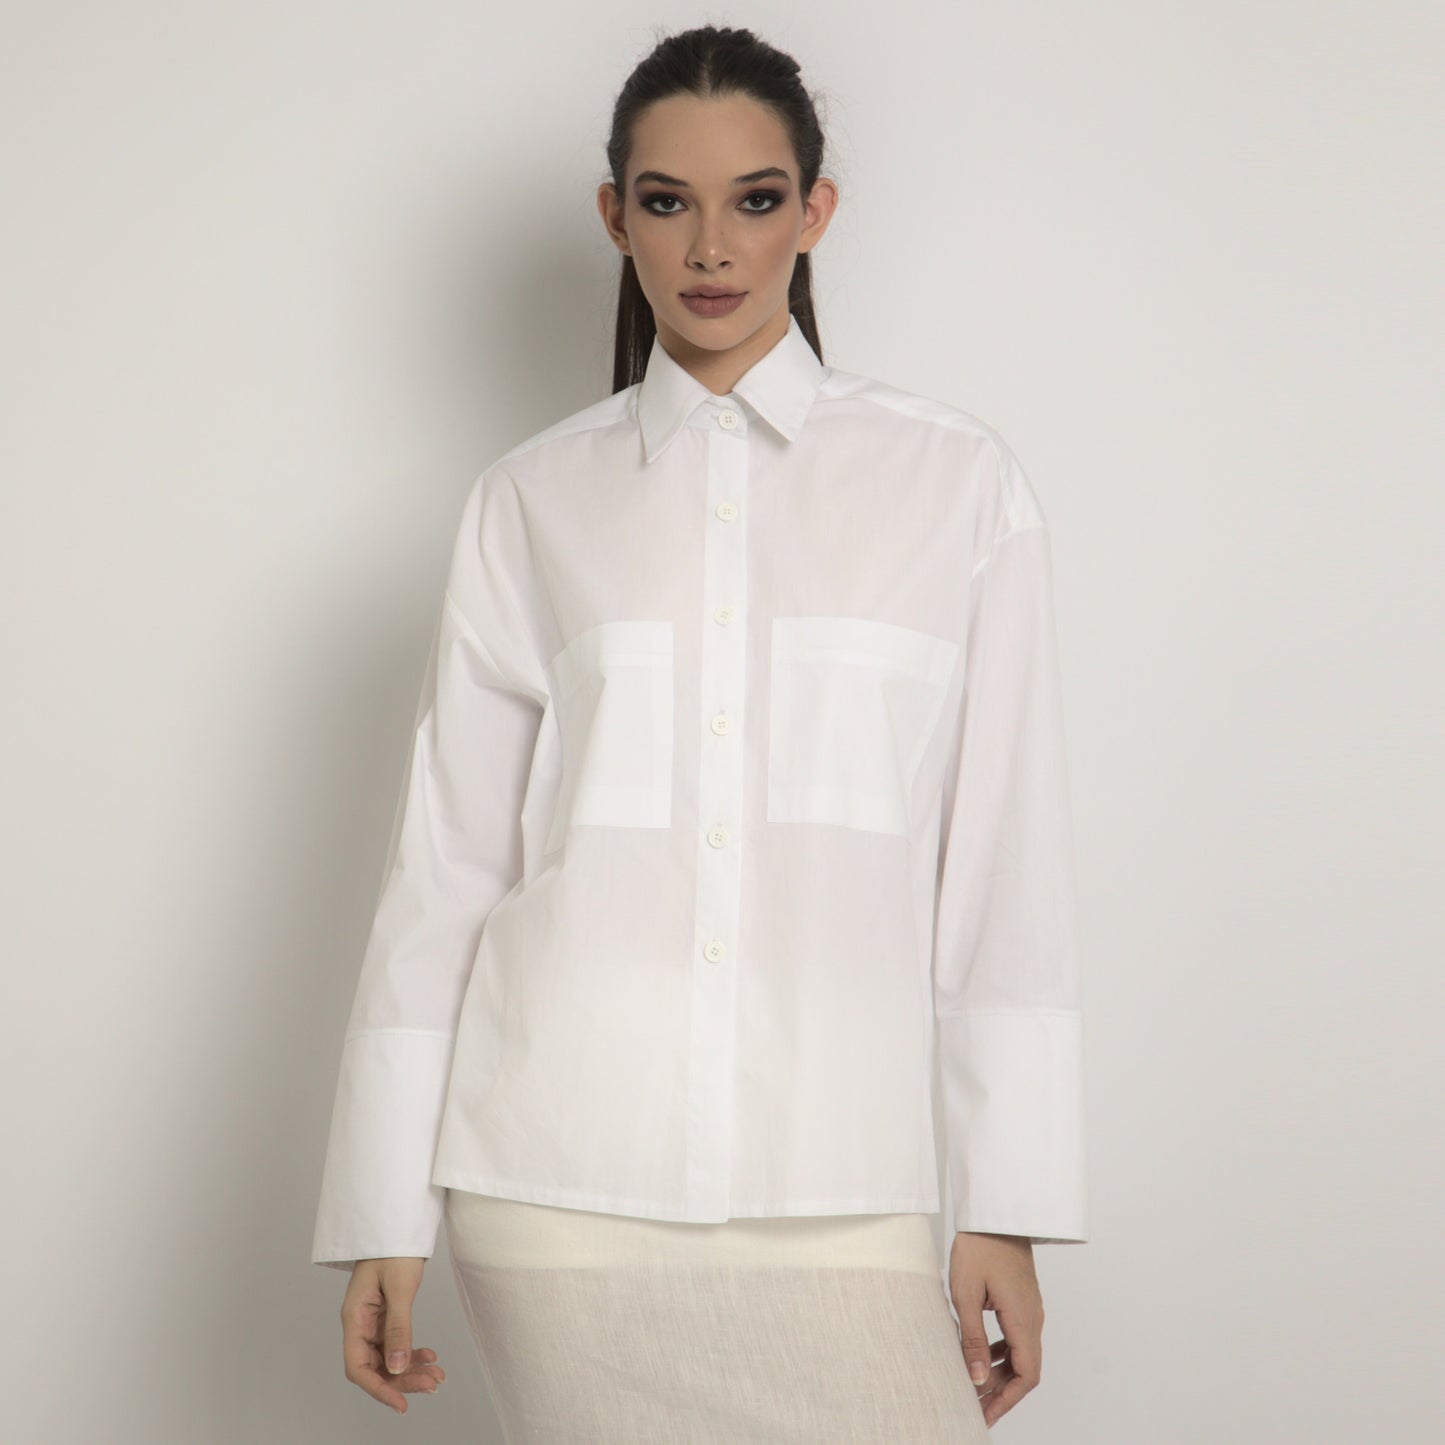 Camisa tricoline branca feminina manga comprida